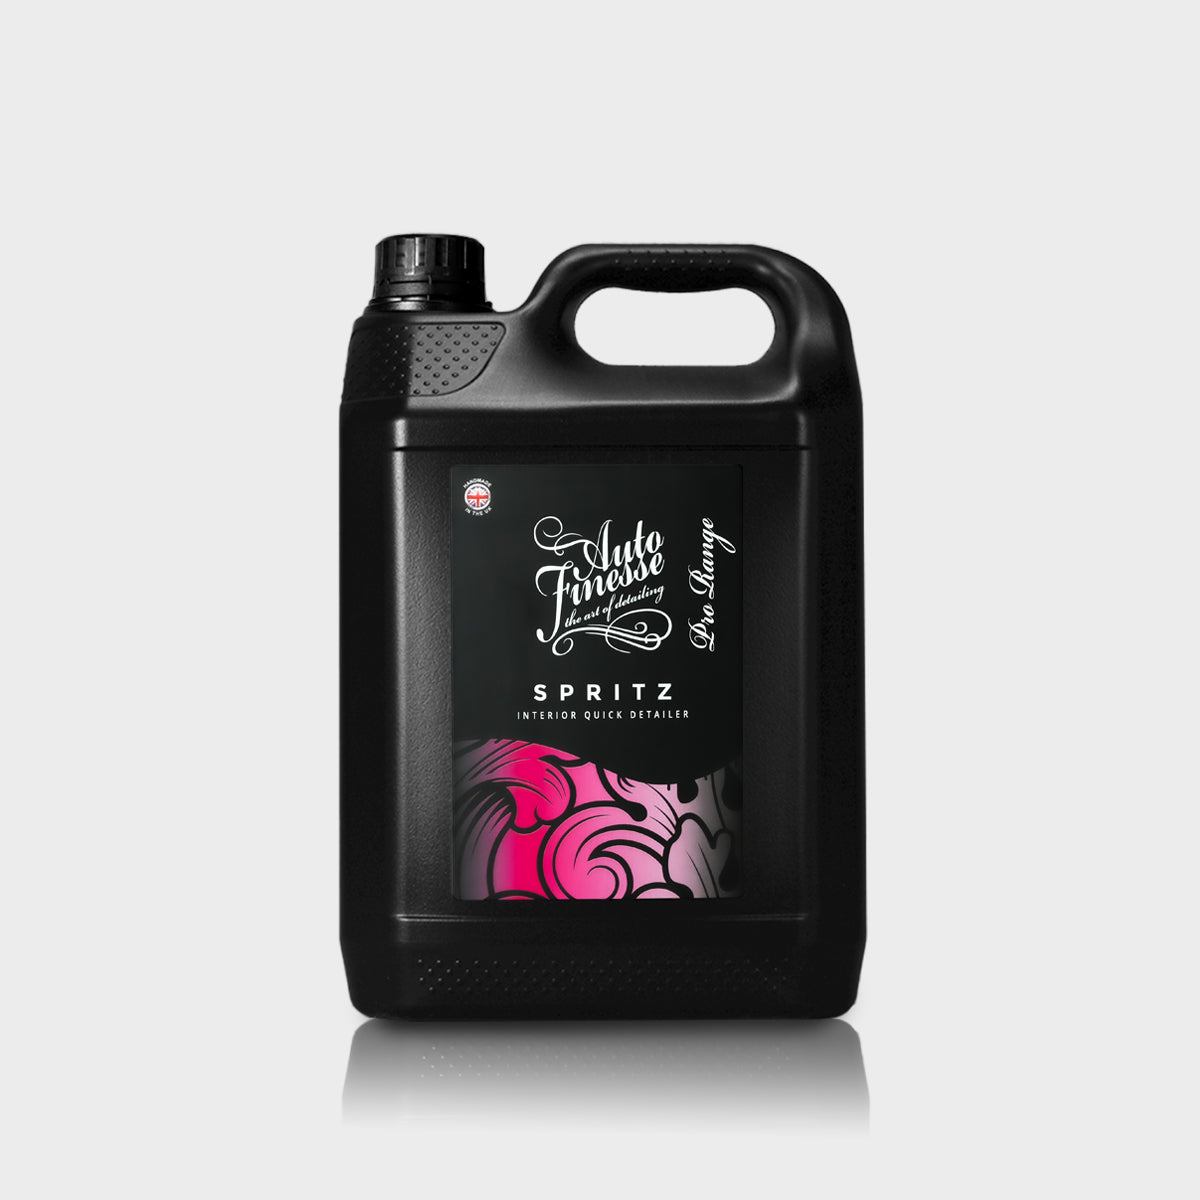 Spritz Detailing Spray 5 litre